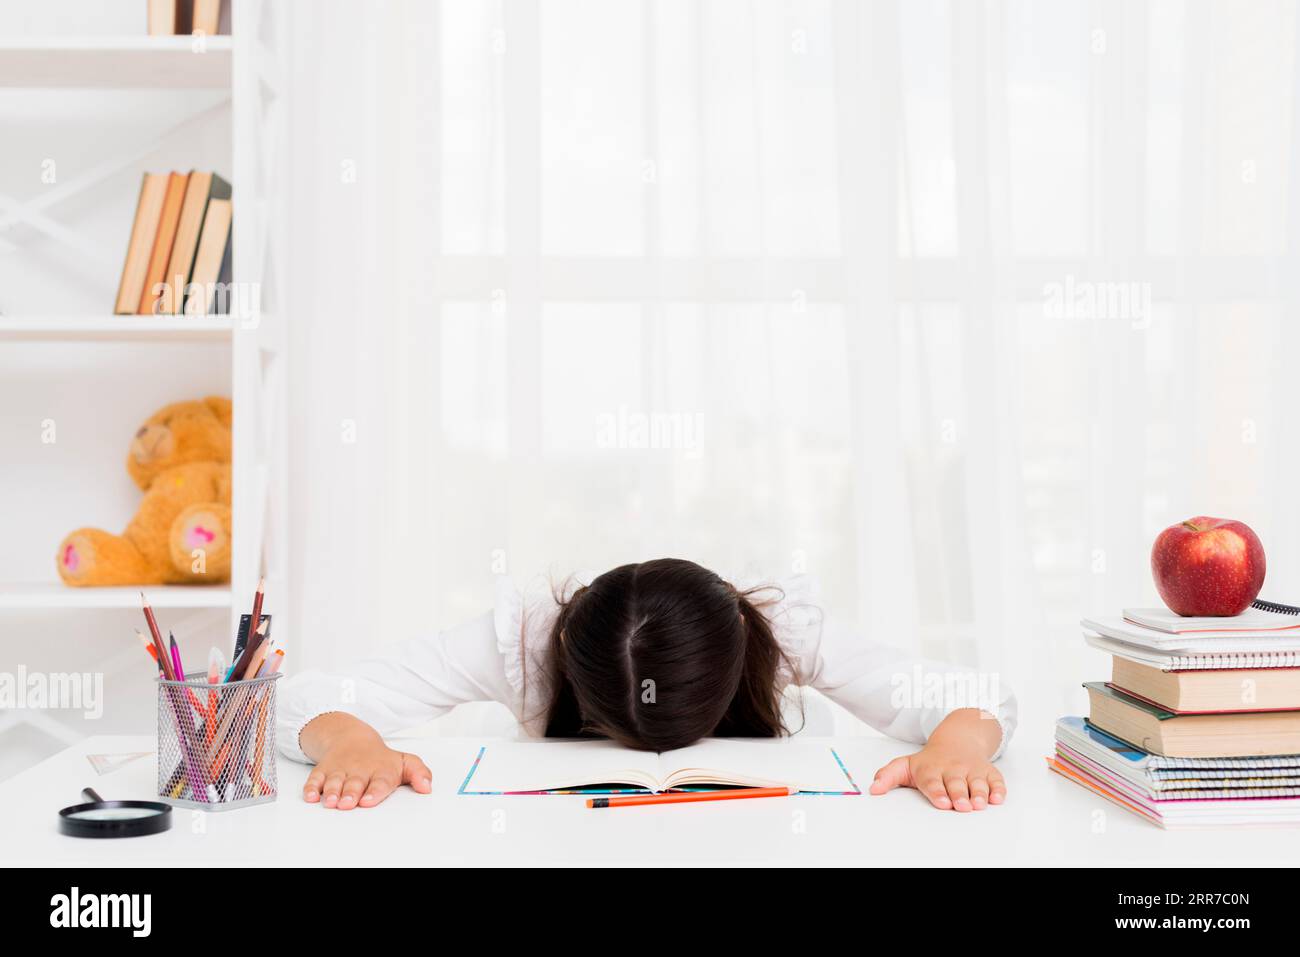 Tired schoolgirl lying copybook Stock Photo